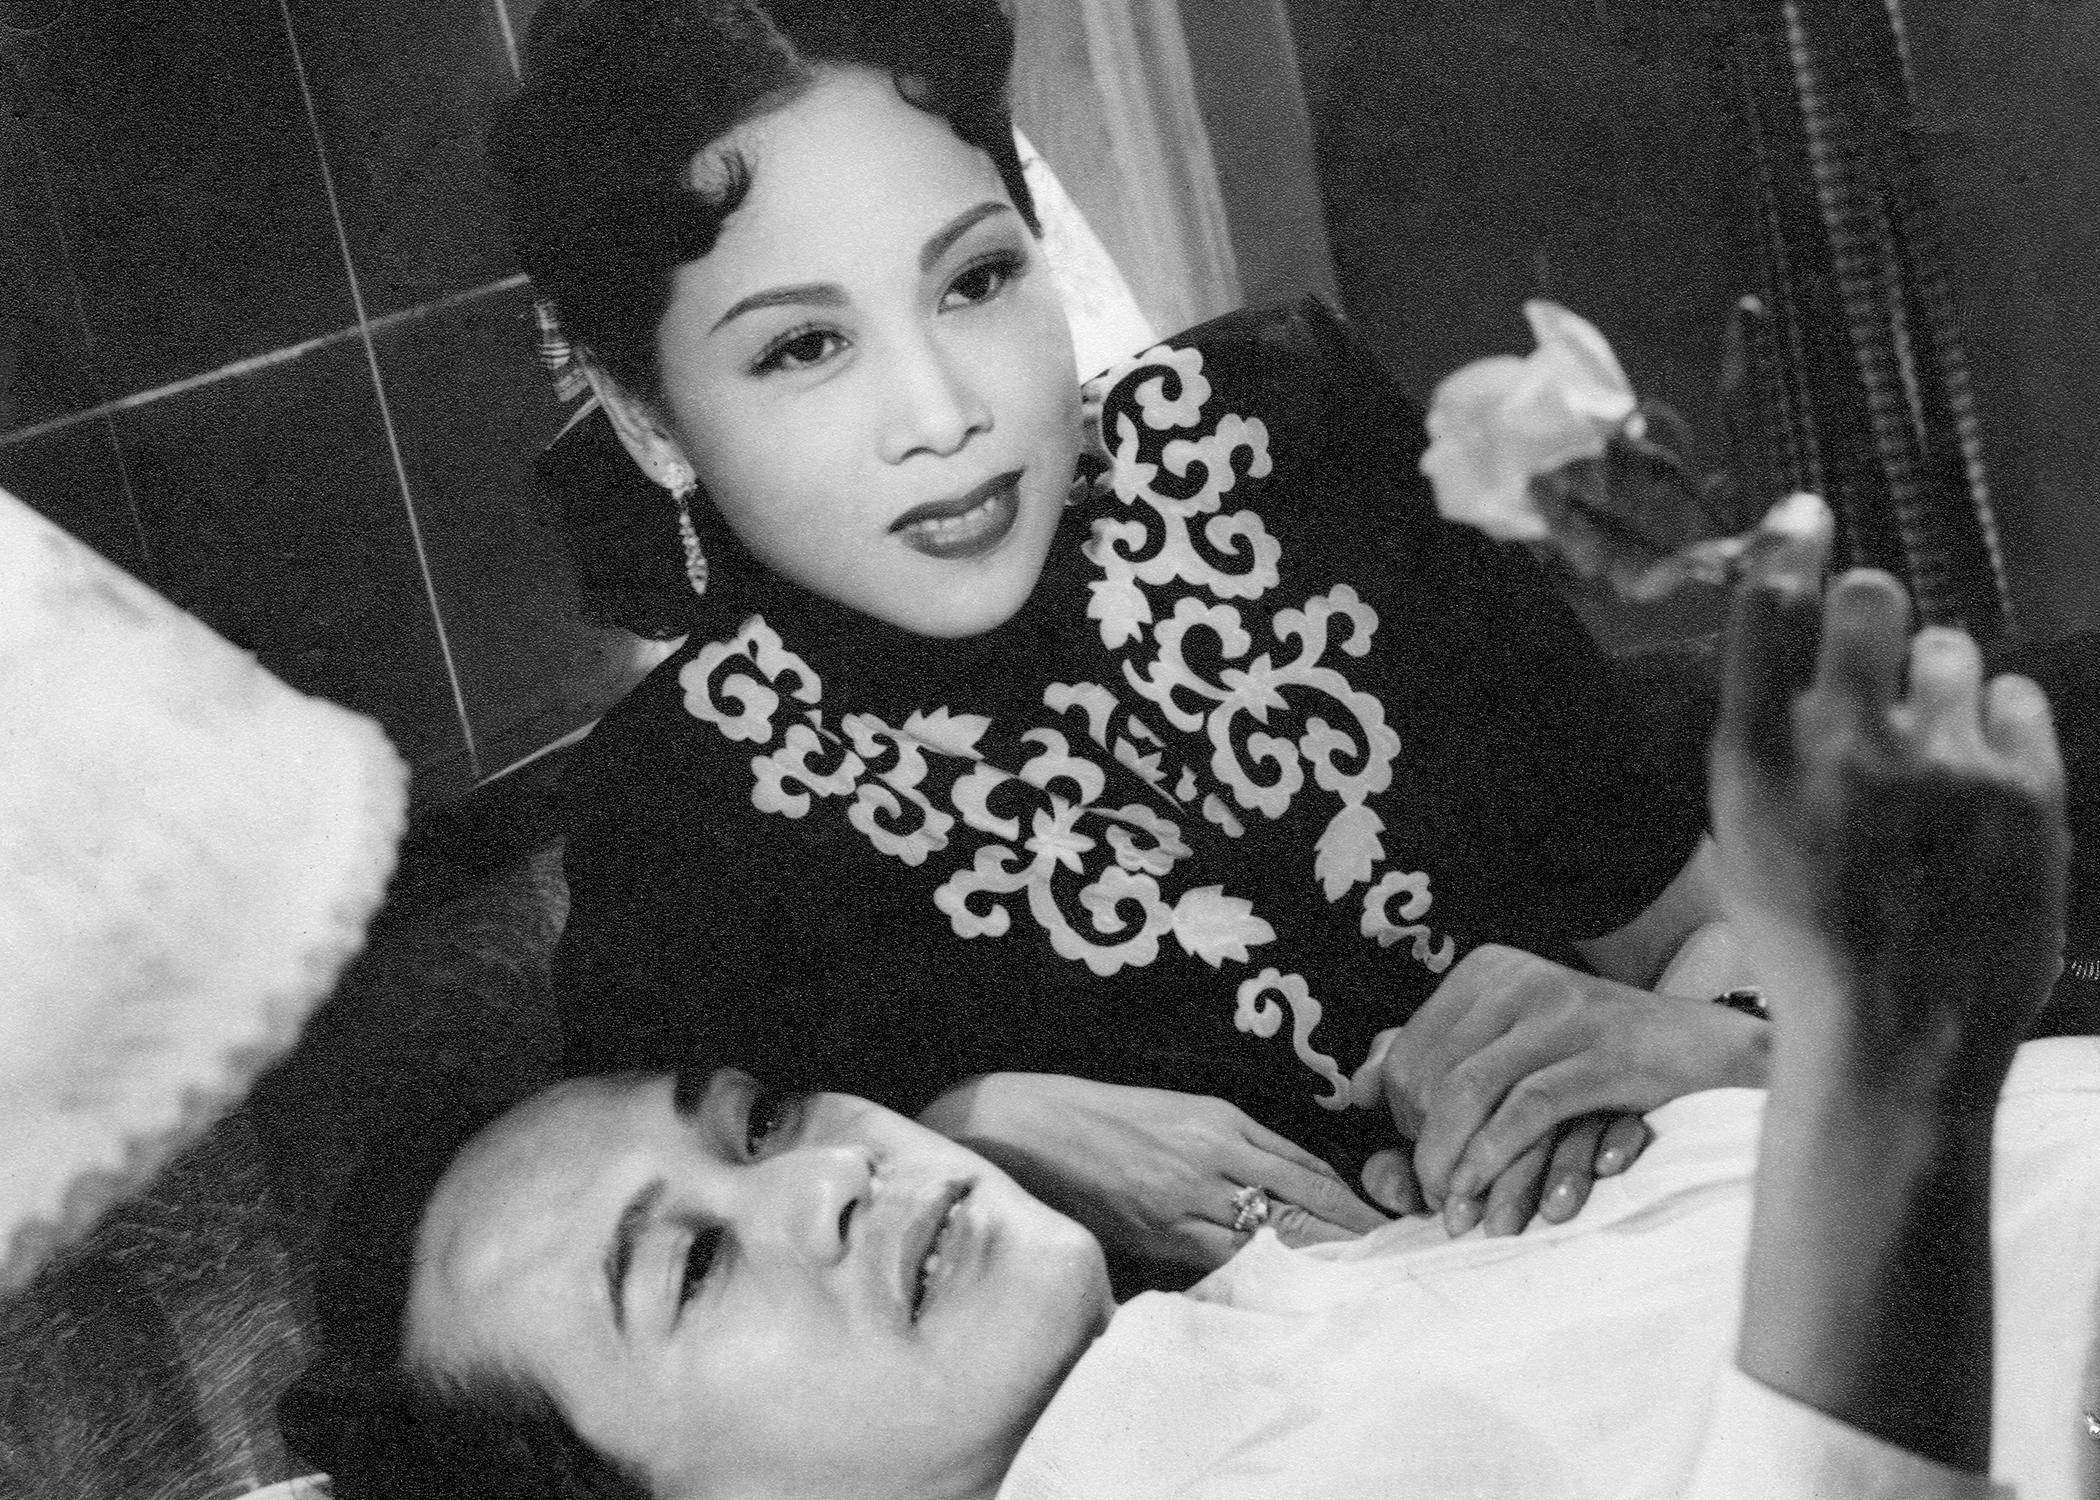 康樂及文化事務署香港電影資料館由七月至十二月，逢星期五上午十一時的「影畫早晨」節目，將精選放映18齣芳艷芬經典作品，讓戲迷重溫這位「花旦王」精湛演技。圖示《唔嫁又嫁》（1952）劇照。
